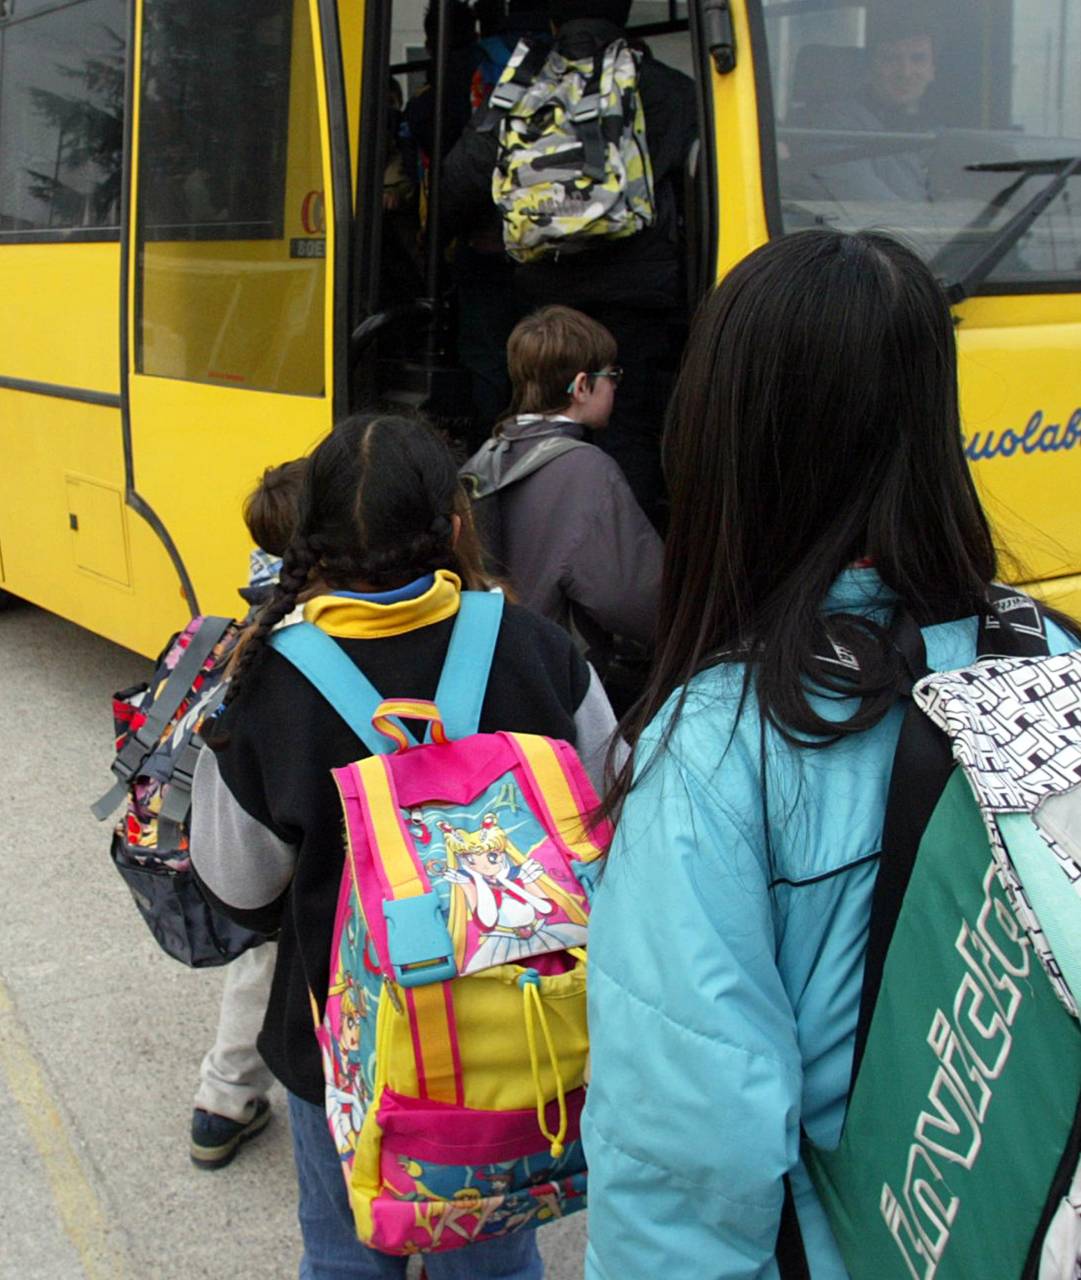 Trasporto pubblico, in Campania per gli studenti è gratis